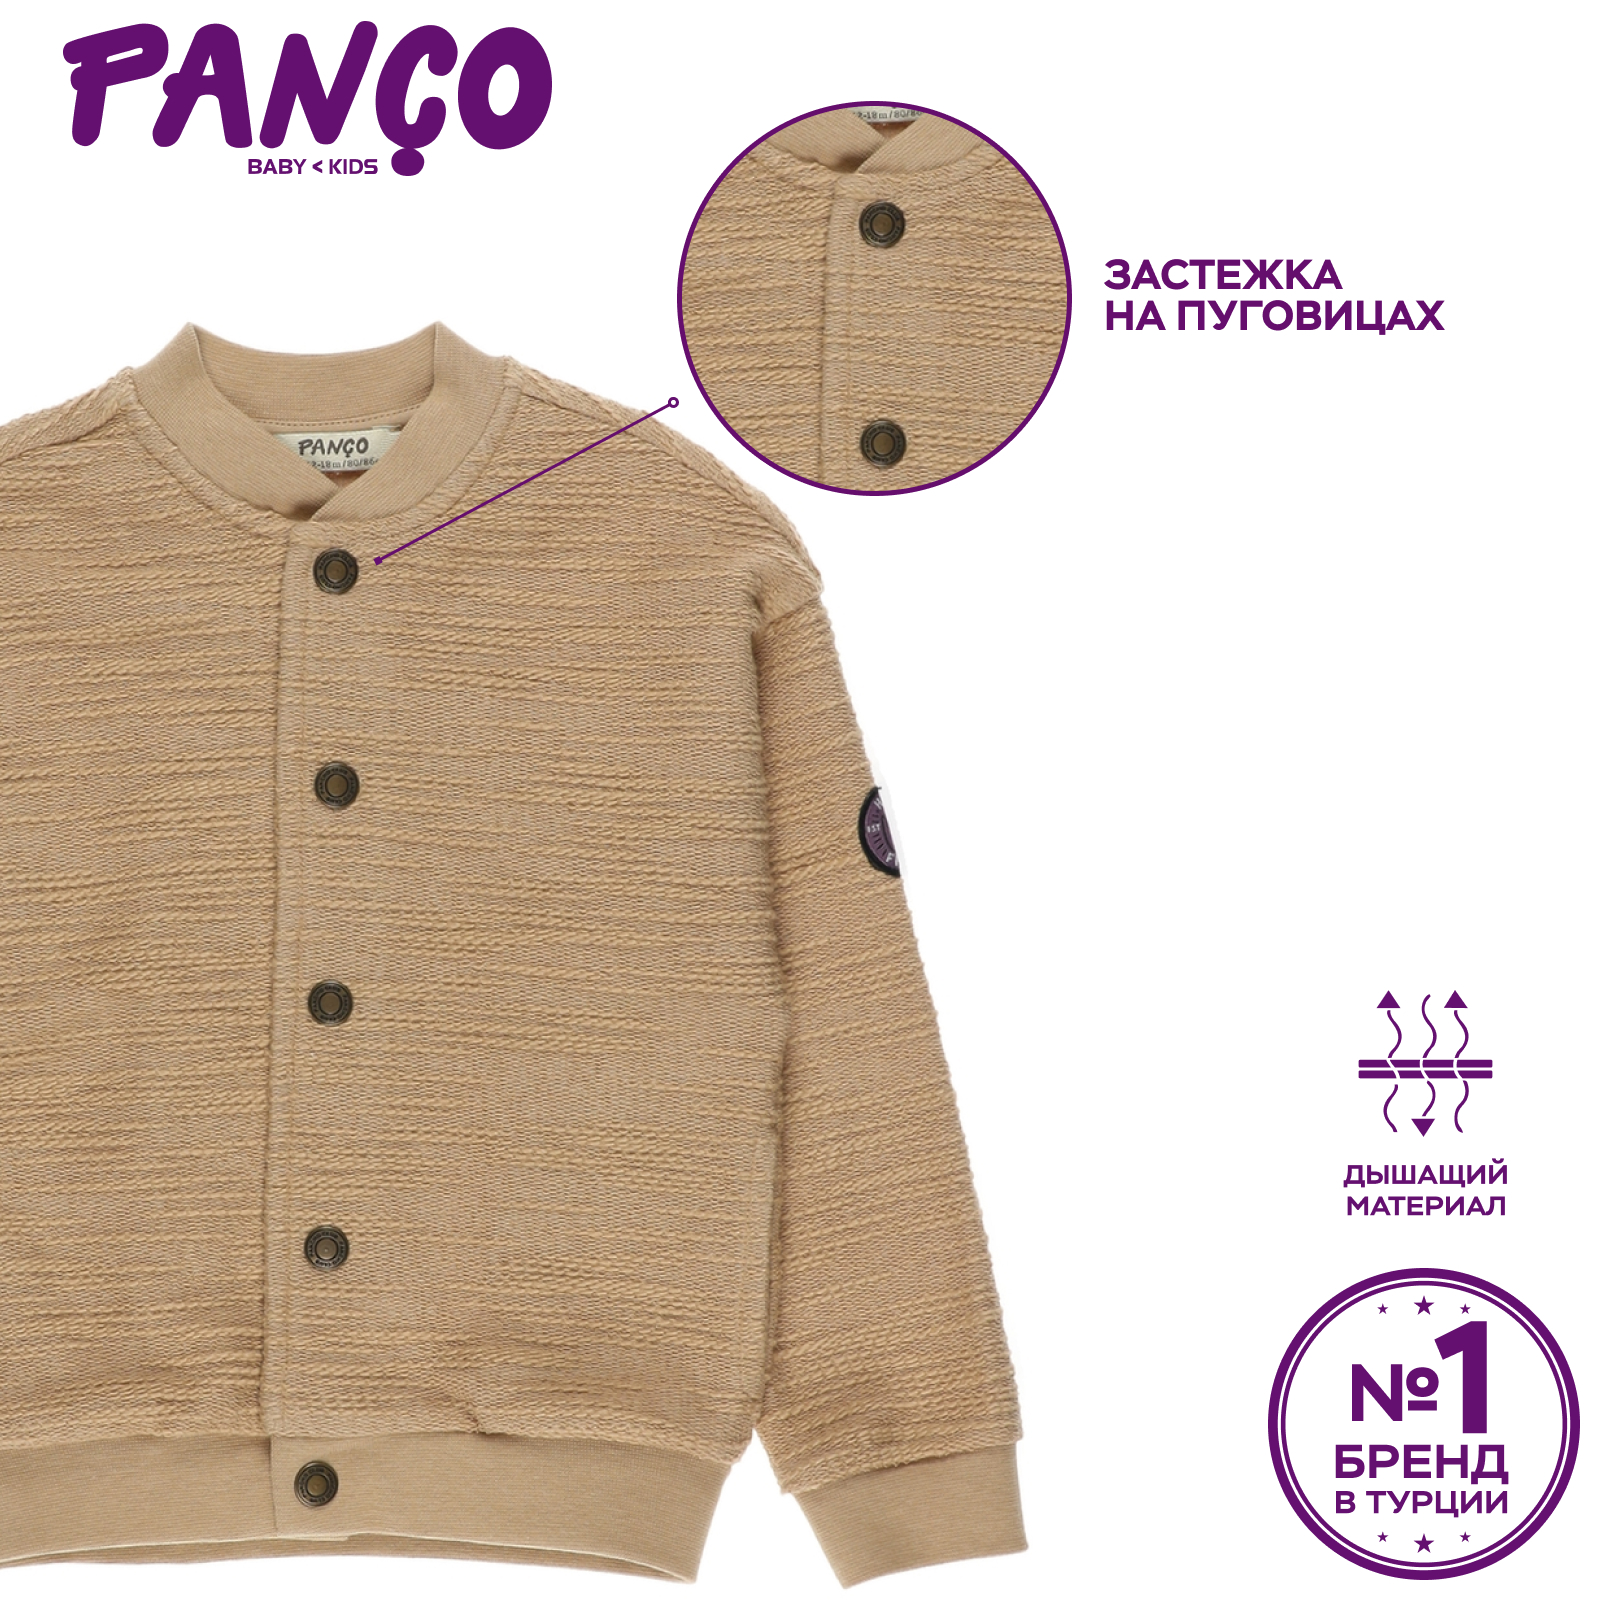 Куртка PANCO 2211BB22002/037 - фото 5